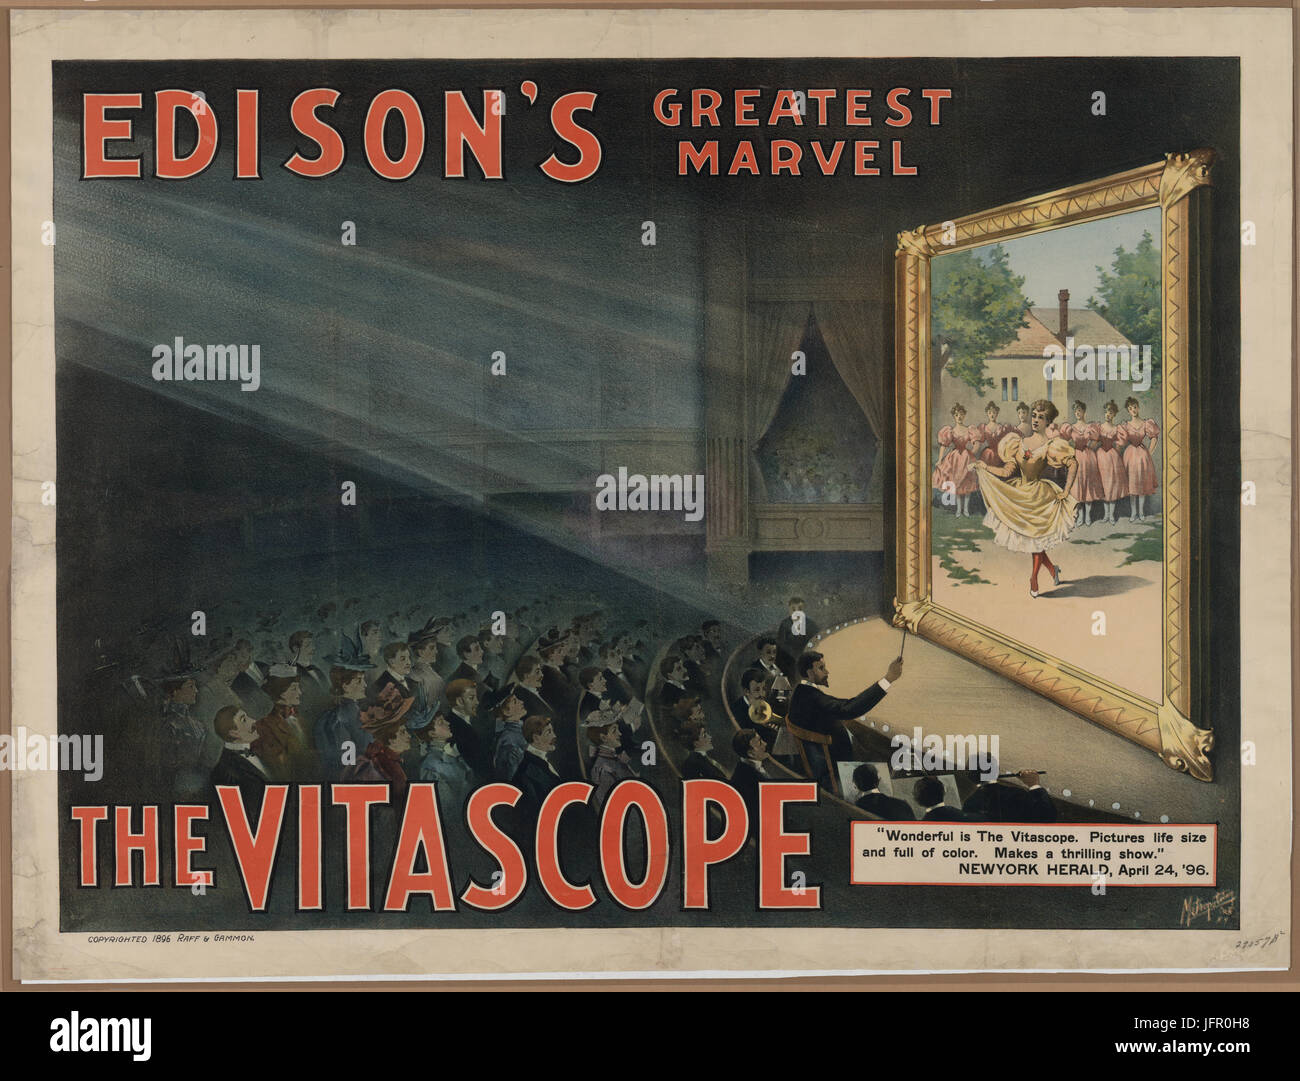 Motion Picture Plakat für "Edisons größten Marvel - The Vitascope" zeigen Film Zuschauer Großbild mit Frau tanzt auf Bildschirm und andere im Hintergrund beobachten. 1896 Stockfoto